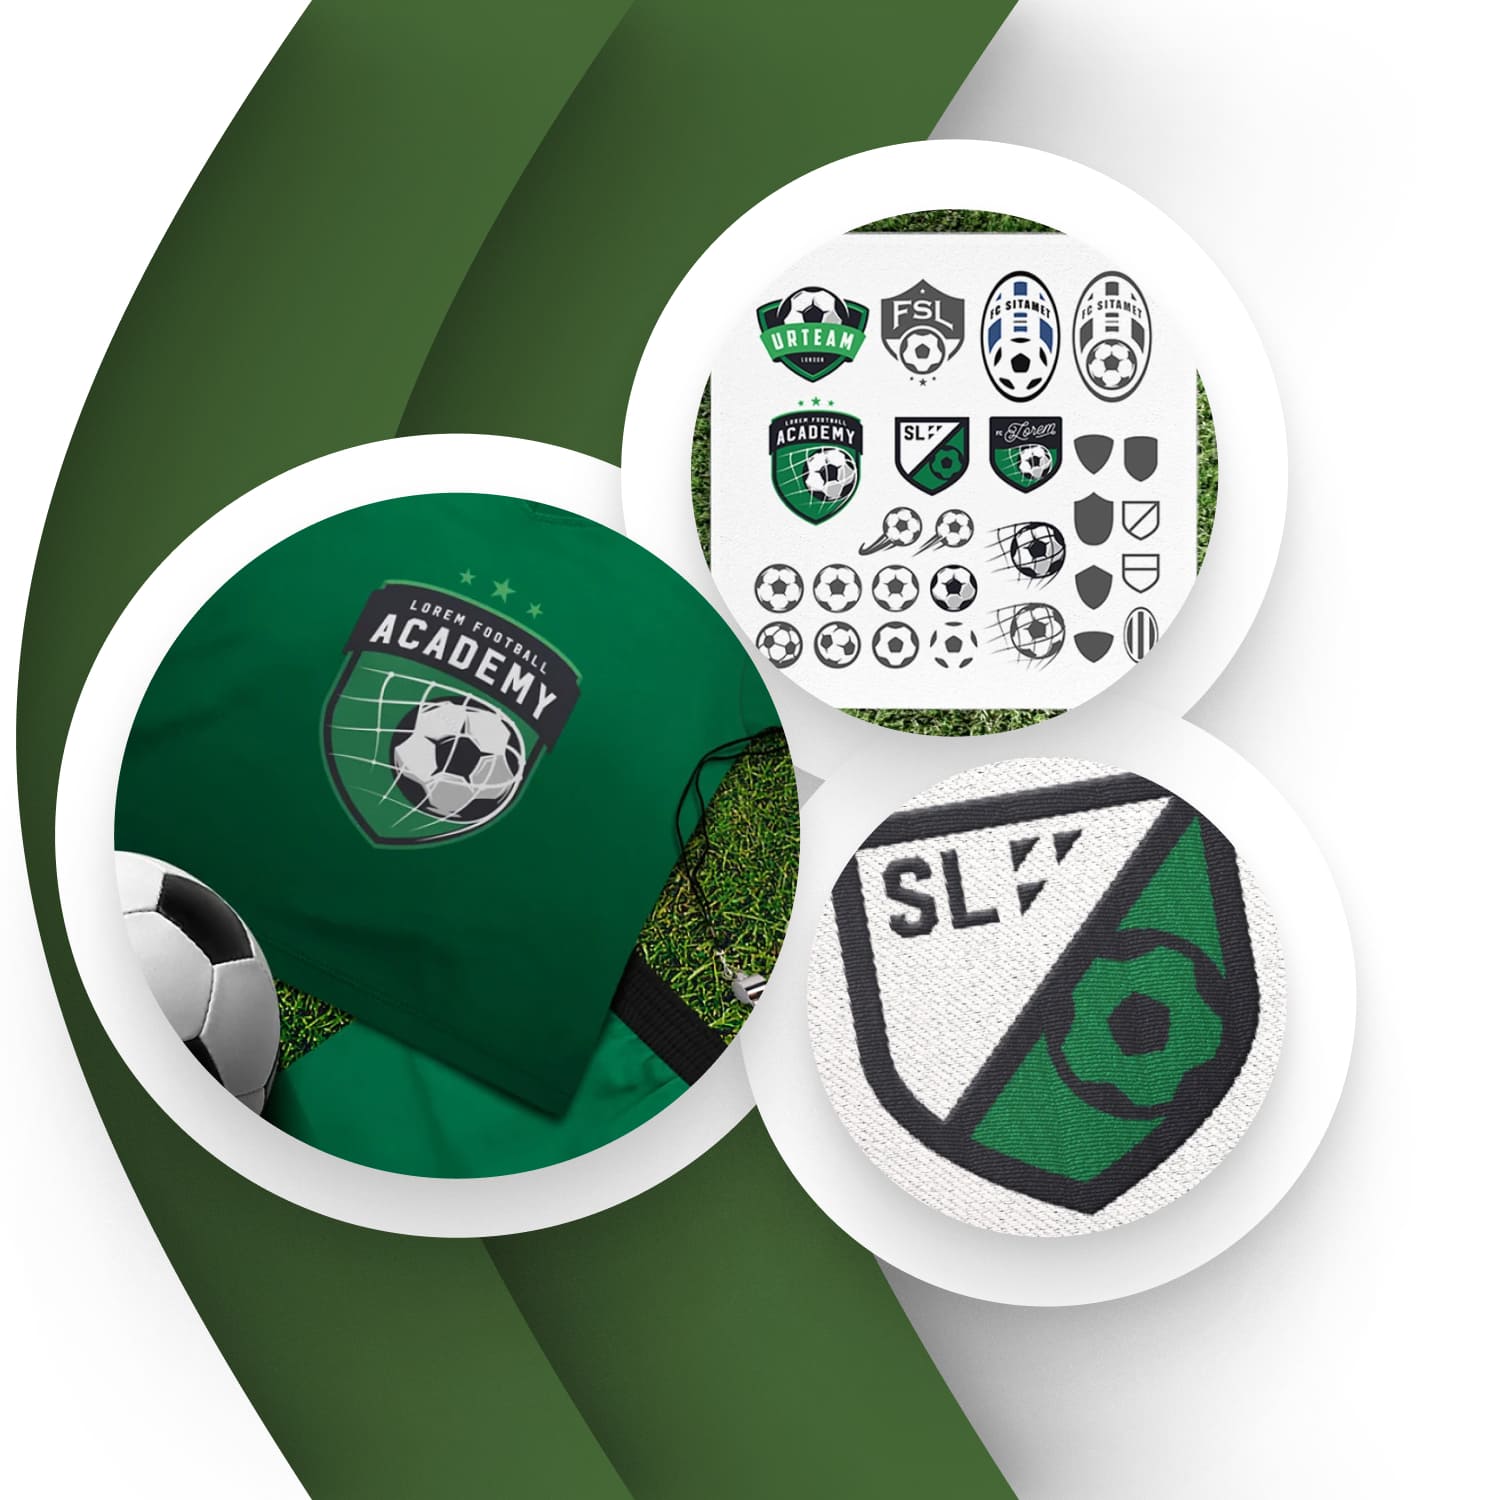 Soccer emblem design elements cover.